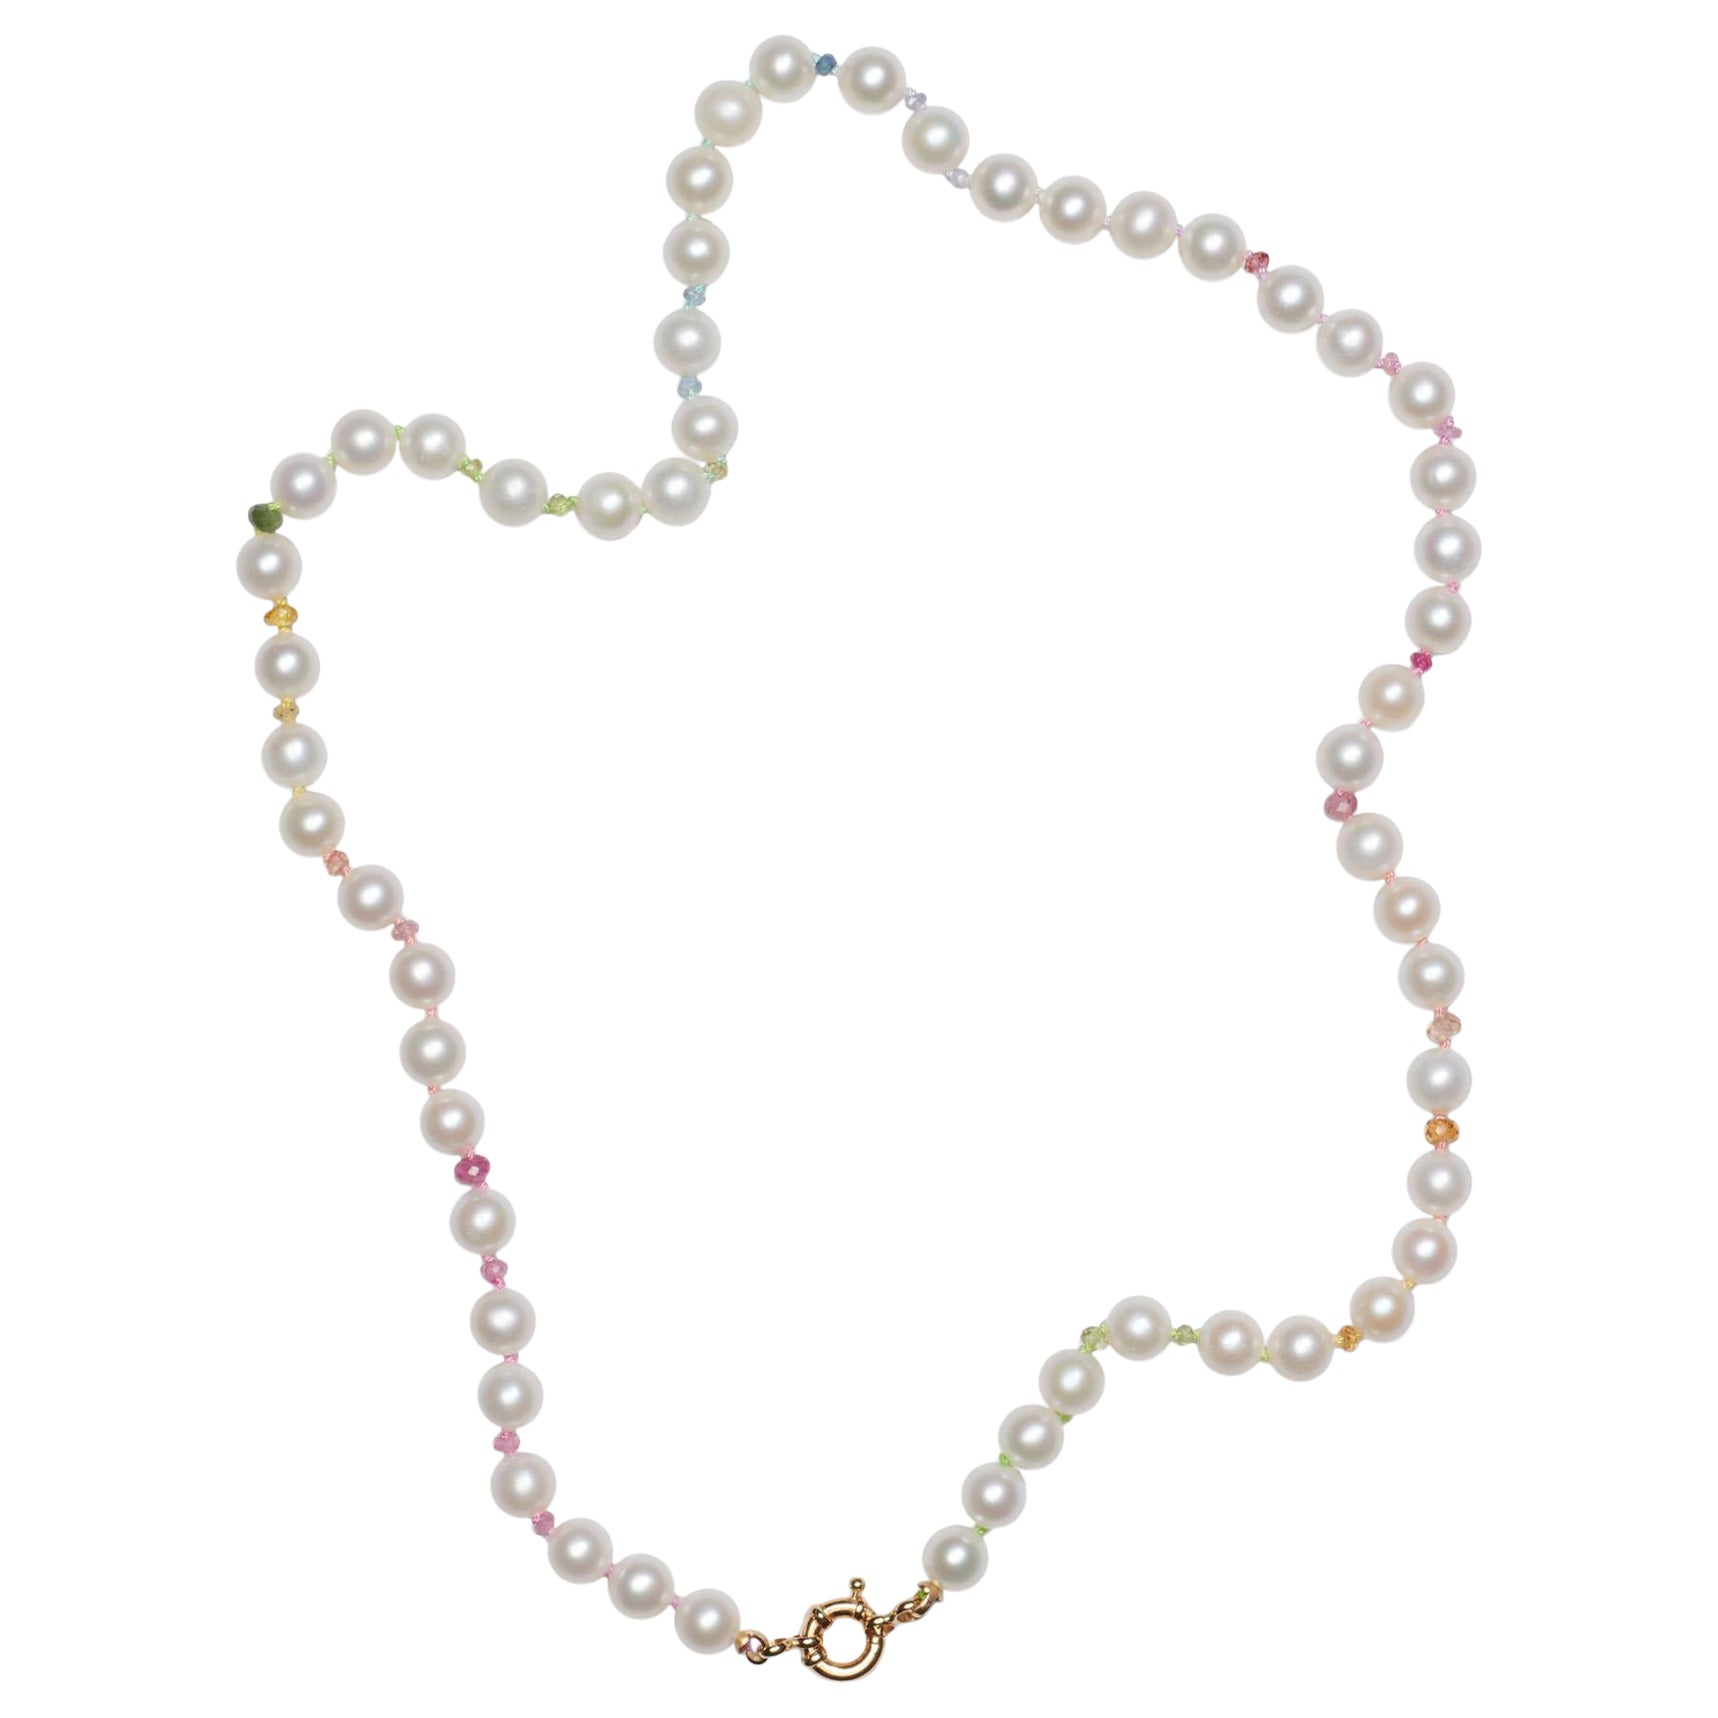 Le collier classique de perles blanches avec des perles de 6 mm, des saphirs multicolores étincelants et d'autres pierres précieuses ! Les couleurs suivent le modèle de l'arc-en-ciel, noué à la main sur un fil de soie multicolore, terminé par un